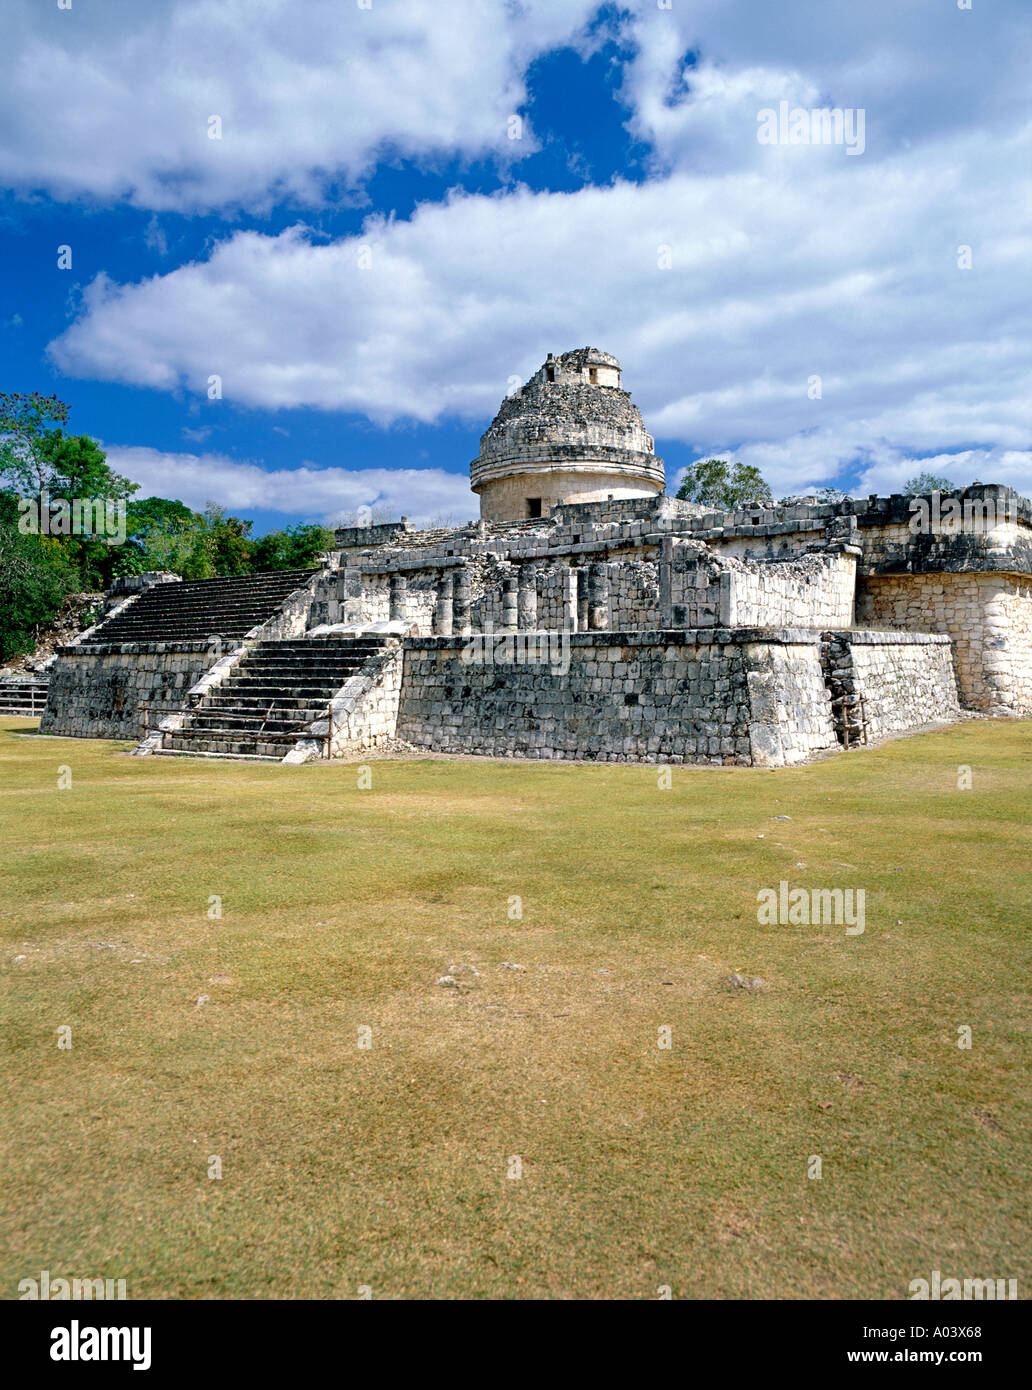 L'observatoire de l'historique Chichen Itza site archéologique de l'état du Yucatan au Mexique. Banque D'Images